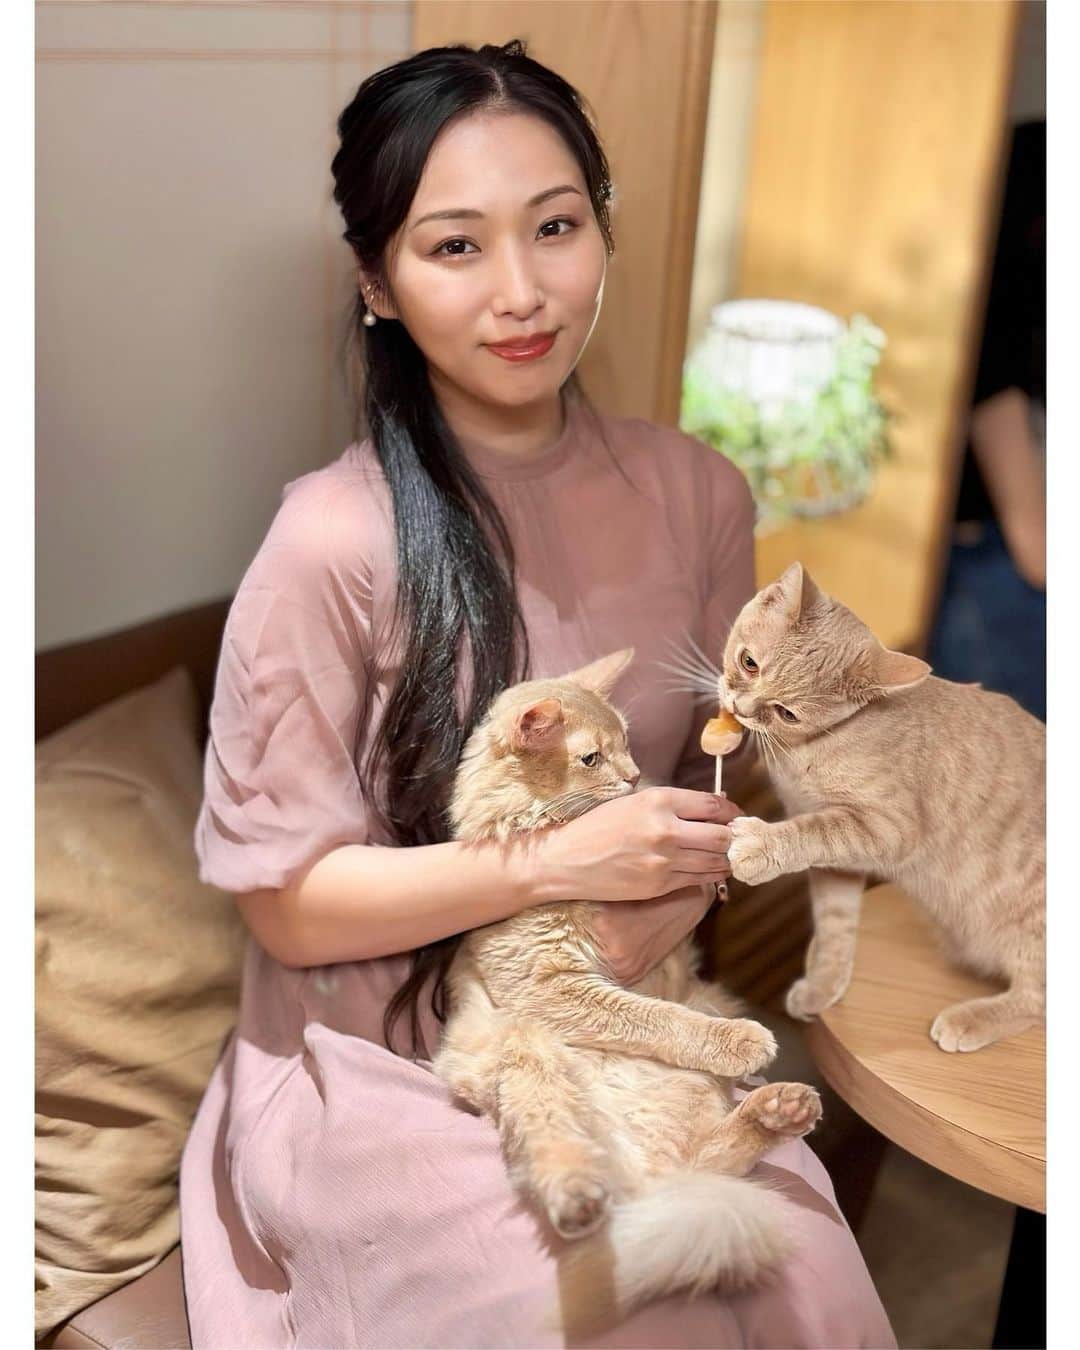 神戸麻衣のインスタグラム：「お友達と猫カフェ🐈☕️💕 今回は【猫カフェモカラウンジ新宿店】へ✨  たくさんのネコちゃんがいて癒された〜☺️💕 猫カフェは、基本的に猫ちゃんを抱っこするのはNG🙅‍♀️  今回はオプションの【ニャンニャンセット】で、猫ちゃんのおやつ+抱っこ撮影をしてもらいました🐈❤️ おやつを持っているだけで、たくさんのネコちゃんが寄ってきてくれる〜✨ とても癒されるし、ドリンクバーも付いているのでお友達とお話しながらゆっくりできました☺️  渋谷や原宿にもお店があって、かわいい猫ちゃんたちにたくさん会えます❣️  PR @catcafemocha 🐈🐈‍⬛🐈🐈‍⬛🐈🐈‍⬛🐈🐈‍⬛🐈🐈‍⬛  その後は、バスケ日本代表vsオーストラリアをお友達と観戦🏀♪  やはりオーストラリアは、背も高いし、セカンドチャンスをそのままゴールに押し込む場面もたくさんあった🙌 日本としては、3Pを打つチャンスもゴールアタックの機会にも恵まれたから、ドイツ戦よりも動けていて 3Pのショット数も成功数も上回っていた👏  前戦のフィンランドでは、DEFリバウンドも多く取れていて 積極的なゴールアタックやスピードでファールをもらえて、フリースローのチャンスを得ることができて良かった👏 BOXスコア的にもフリースローが勝負に大きな影響を与えてることが分かる✨  ホーキンソンのピック&ロールやダイブのタイミング、走り込みも本当に素晴らしい👏  そひて、富永くんが3Pを打てなくてもフェイントからのミドルやゴールアタックなどこの大会の中でも成長しているのがすごく分かった☺️✨  個人的にはフィンランドの時は、エンドスローインのDEFでゾーンだったのを 今回はマンツーに変えたのも良かったと思う👌  あとは、３-2のゾーンの裏と 味方がドライブ行った時に 合わせ&リバウンドに入った選手が見ちゃってて パスが取れなくてミスしてしまうような簡単な部分を気をつけたい…🥹  今回の大会の中で、カウンターでシュートを決め返す速攻の場面がかなりあって良かった‼️ 気持ちが落ちそうになりそうな時ほど流れを取り返す、ガン&ラン、そしてフィニッシュのダンクは最高☺️🔥  そして、オーストラリアのブースターさんの着てたシャツかわいい👕🇦🇺  順位決定戦もまだまだ楽しみ✊🔥  #東京猫カフェ #癒されスポット #ねこのいるカフェ #猫カフェmocha #新宿カフェ #猫カフェ #猫カフェモカラウンジ新宿店 #新宿猫カフェ #司会 #mc #モデル #model #リポーター #、ナレーター #reporter #ナレーション #スポーツmc  #イベント #イベントmc #神戸麻衣」